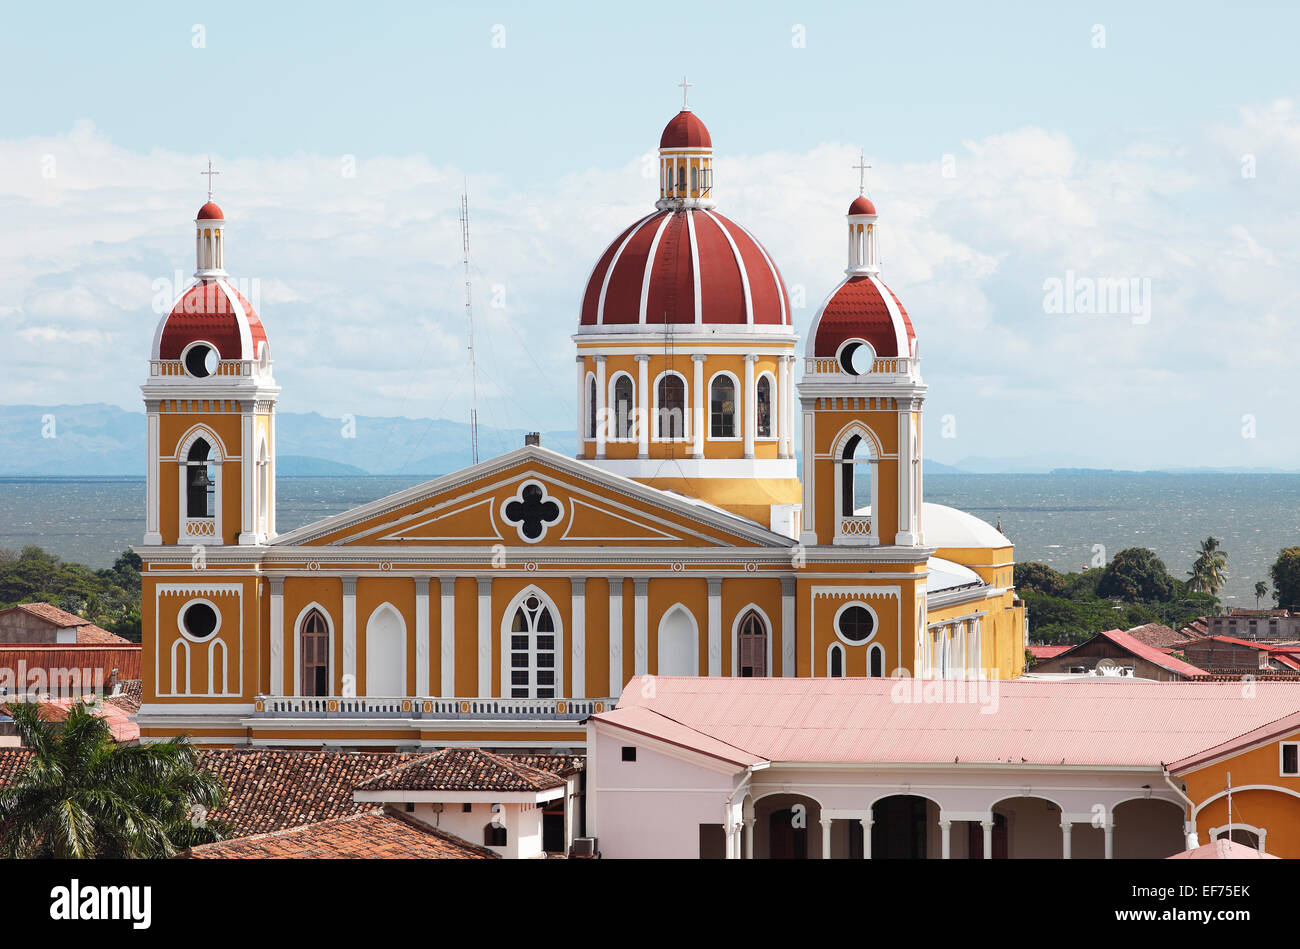 Cathedral of Granada, Granada province, Nicaragua Stock Photo